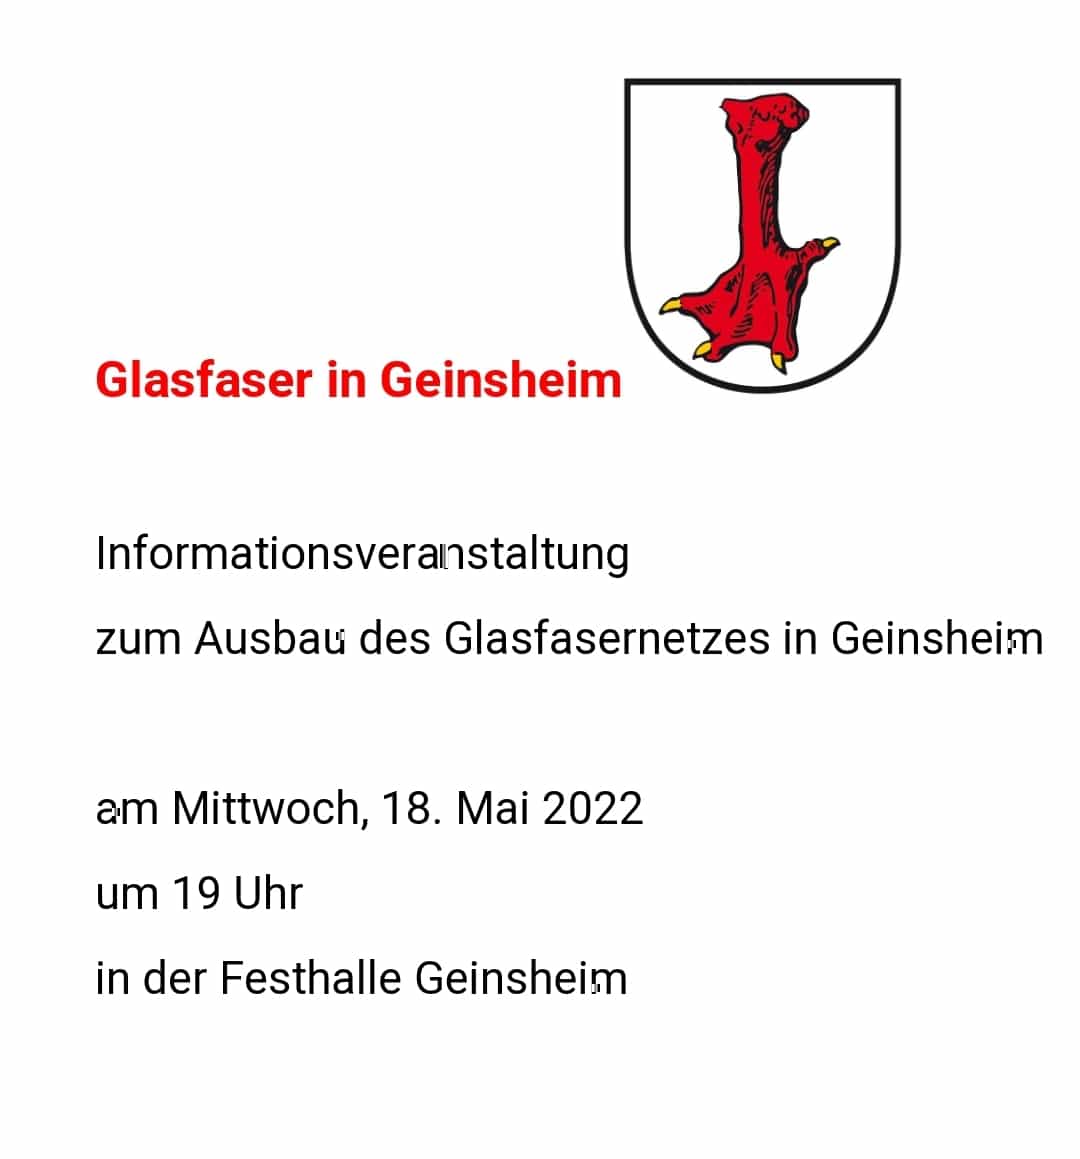 Deutsche Glasfaser in Geinsheim